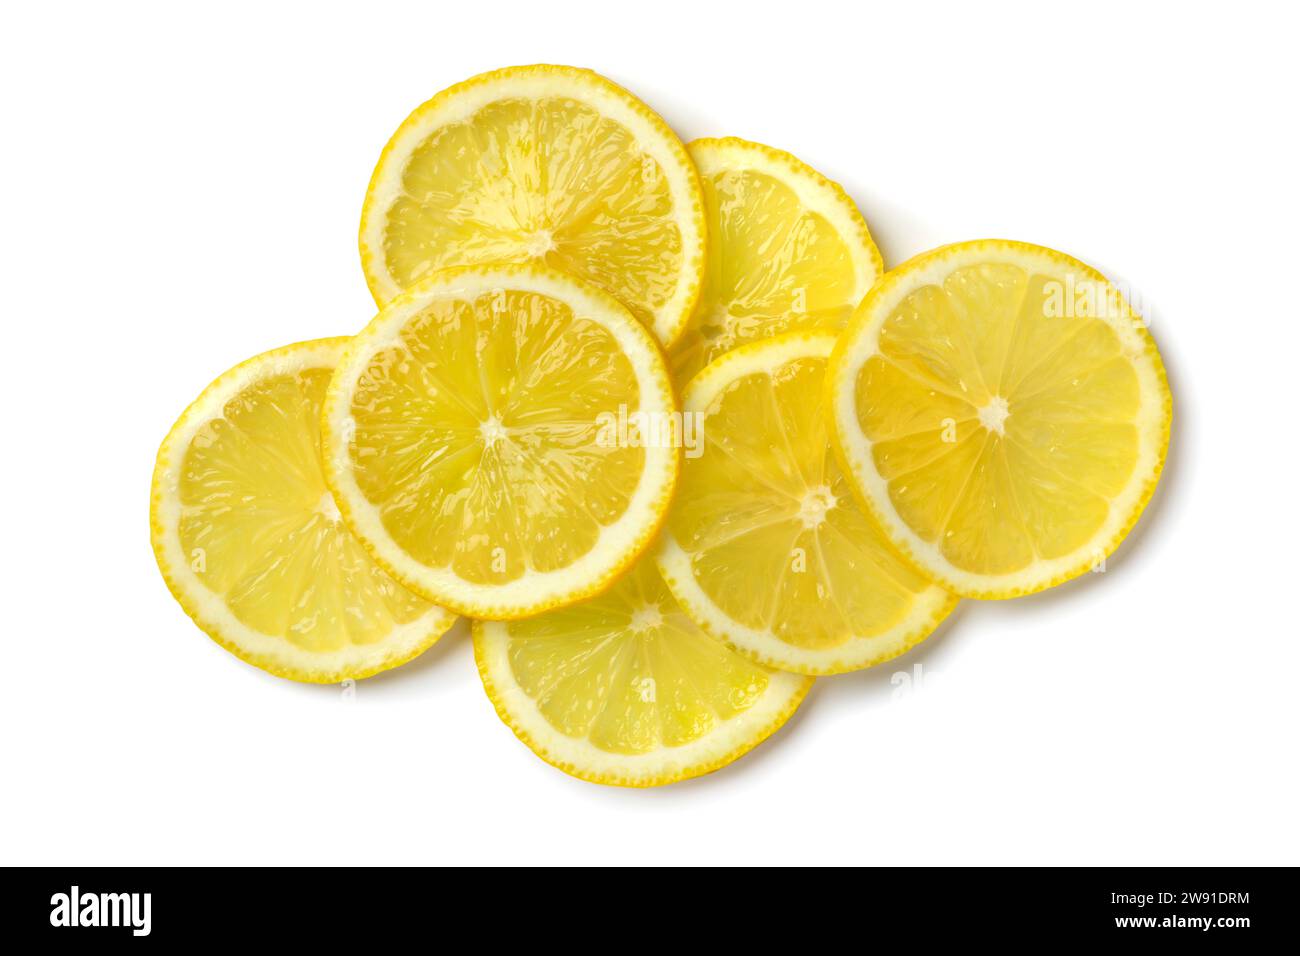 Tas de tranches de citron juteux crues fraîches se ferment isolé sur fond blanc Banque D'Images